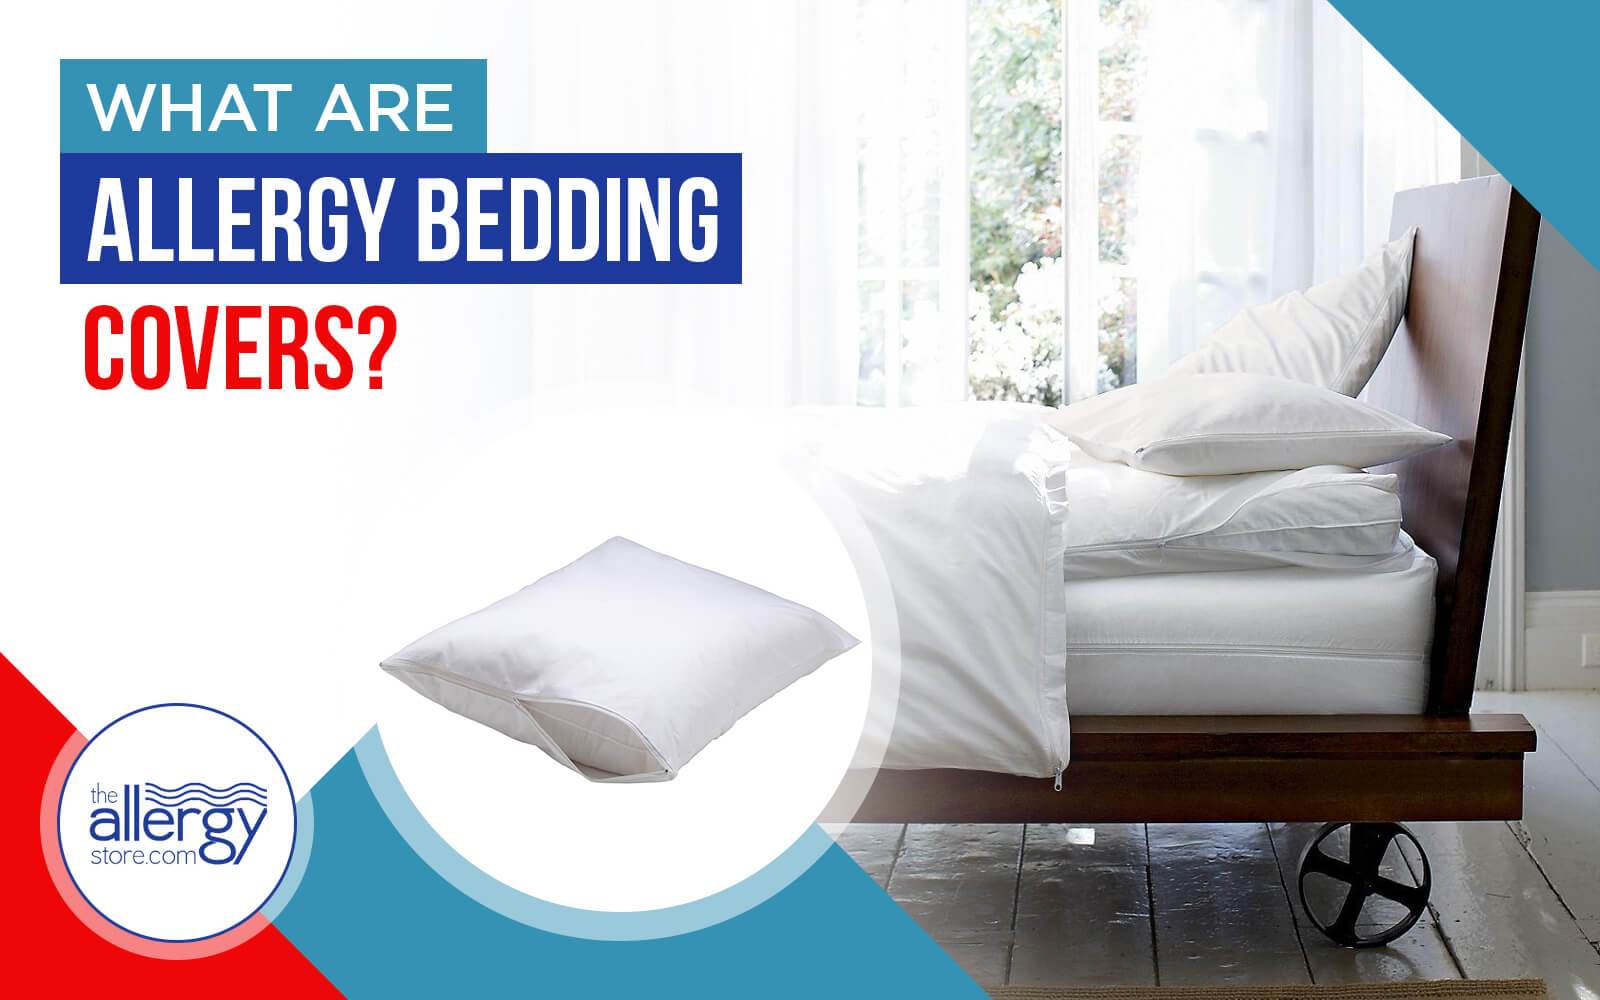 Bedroom Allergens: Does Hypoallergenic Bedding Work?